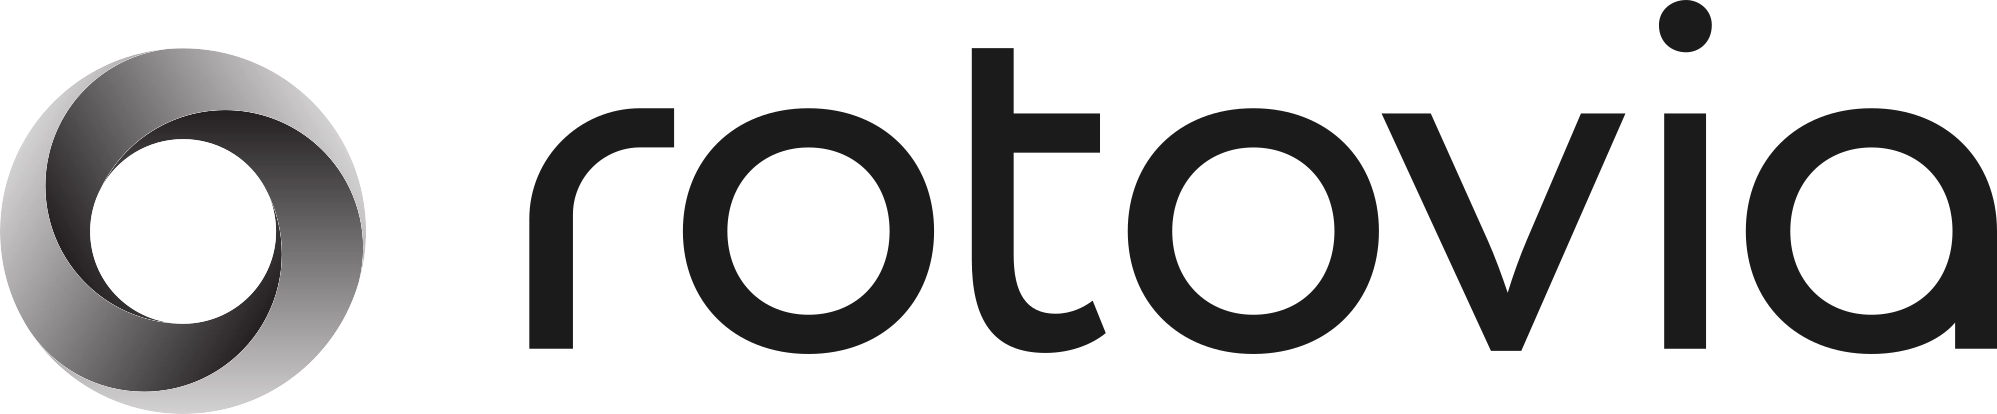 Logo Rotovia